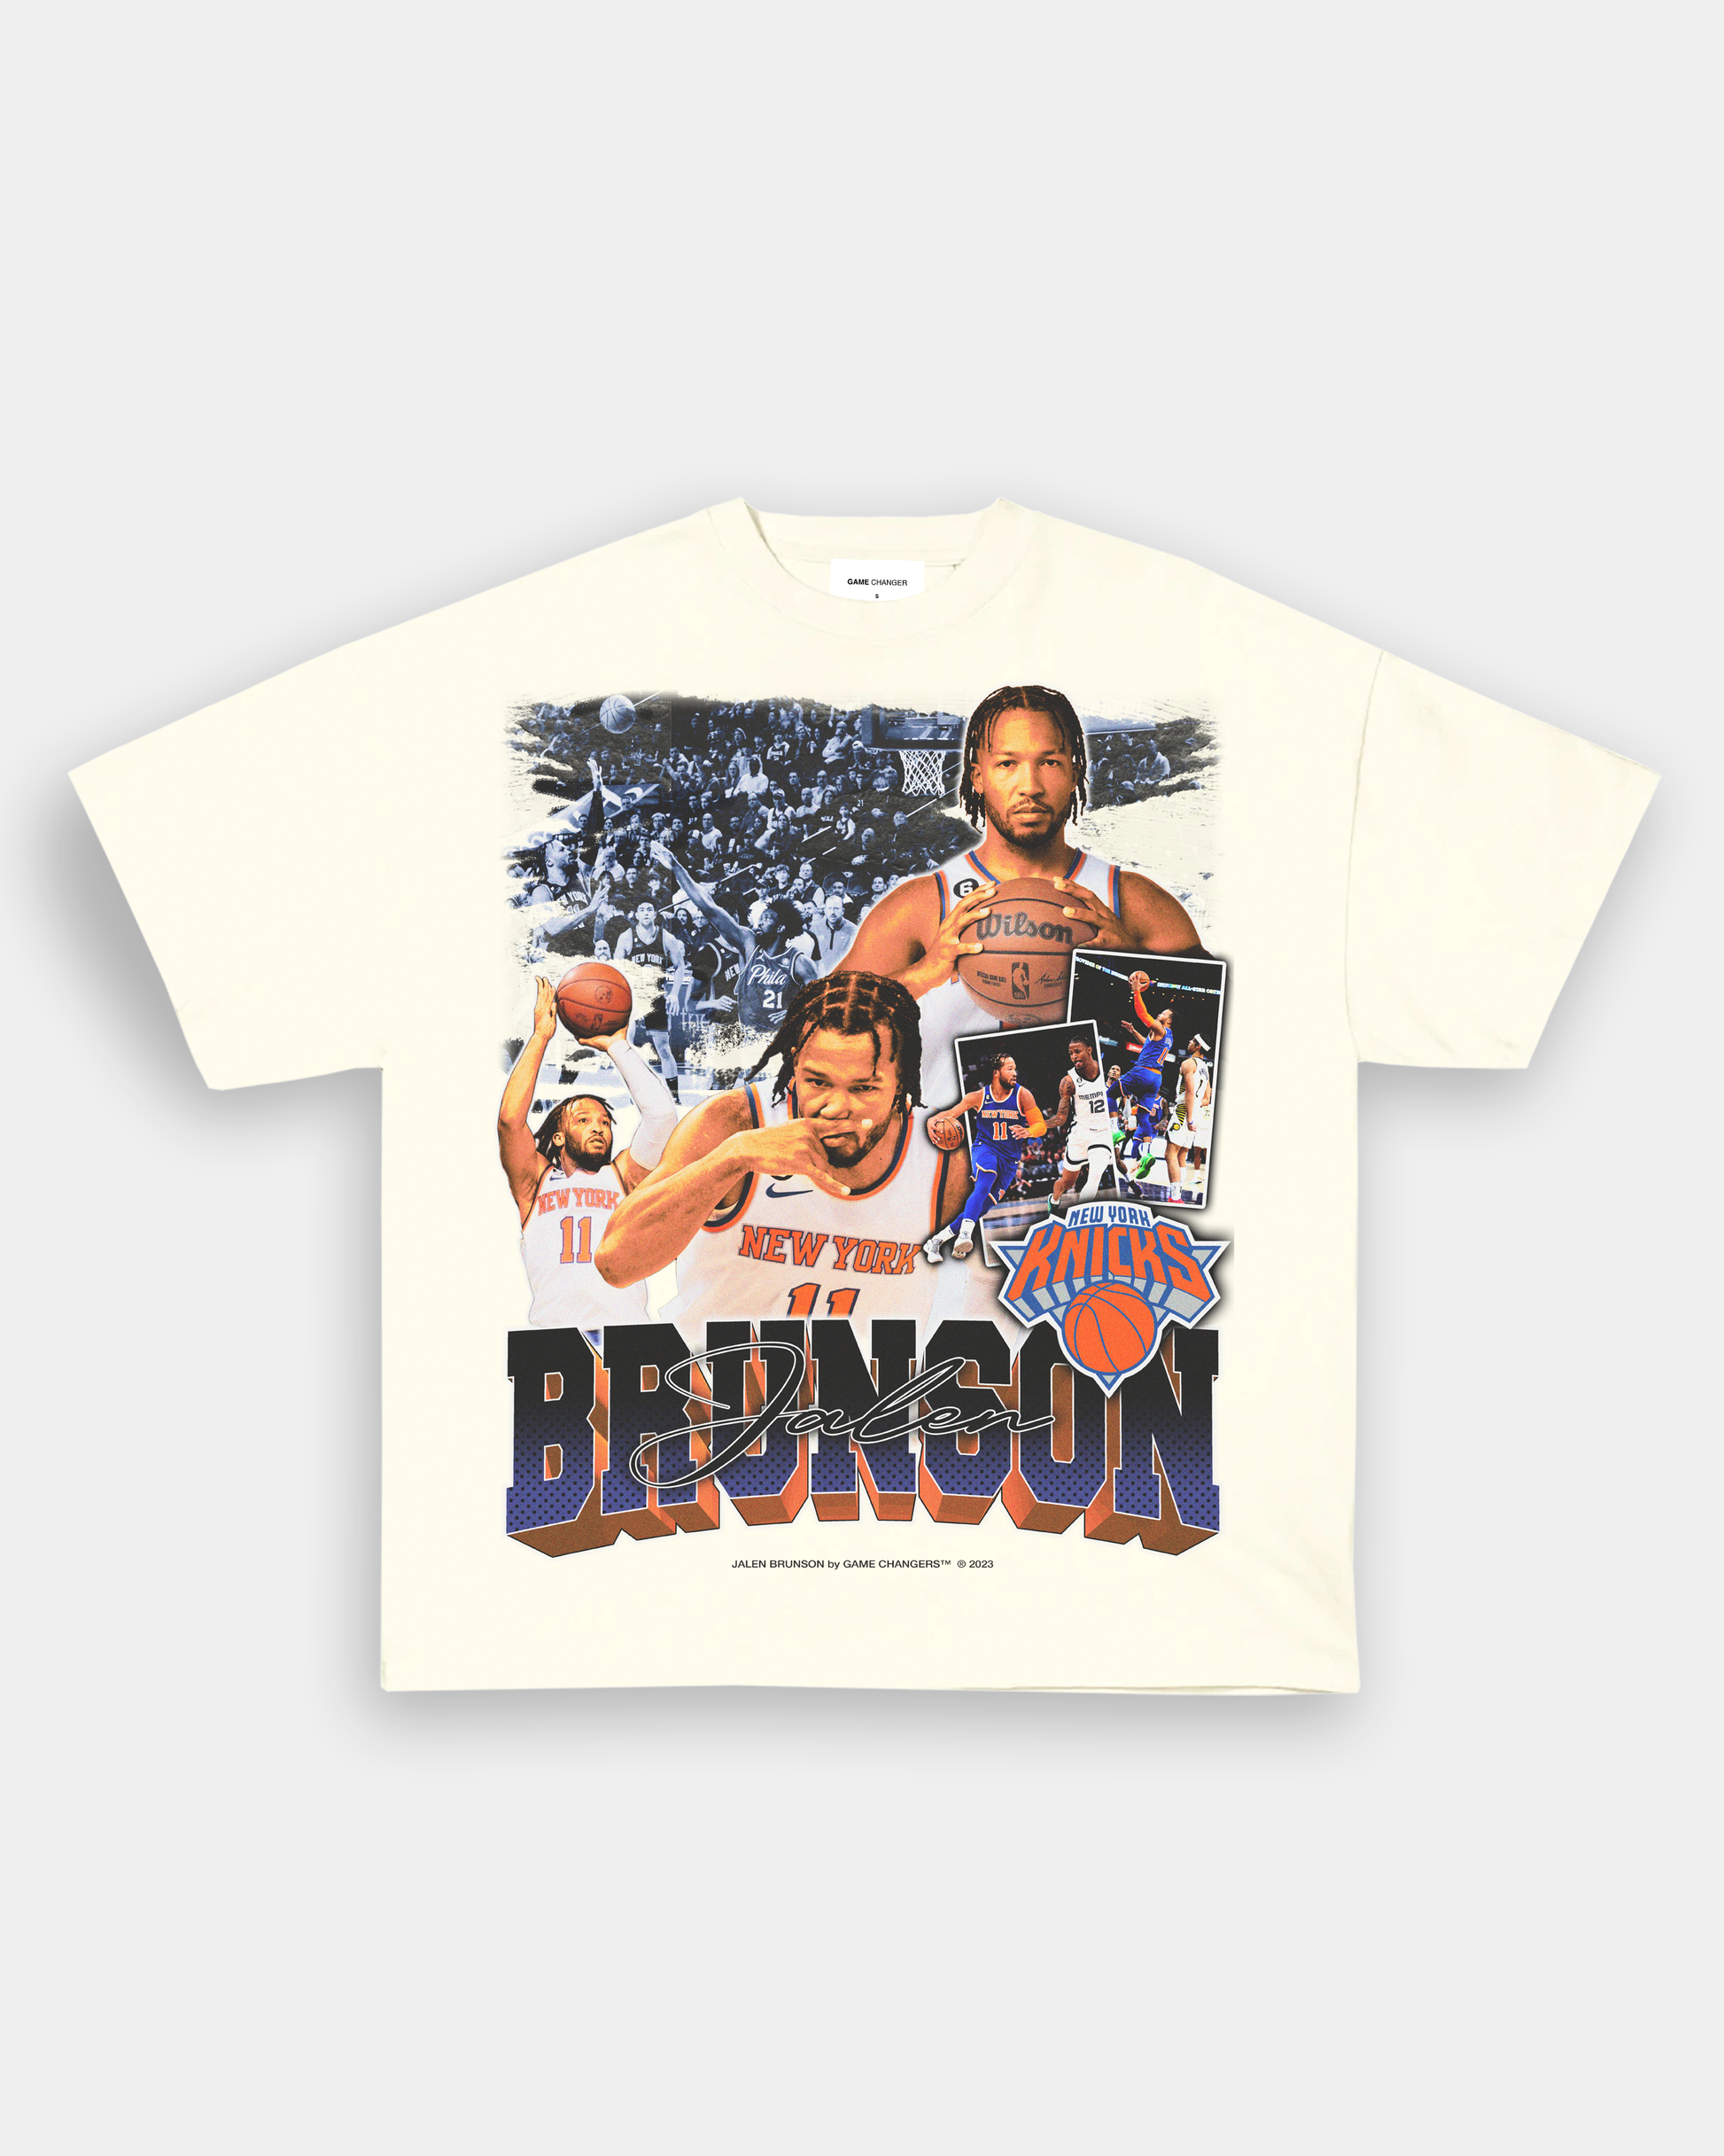 Jalen Brunson Essential T-Shirt for Sale by CasandraTrantow